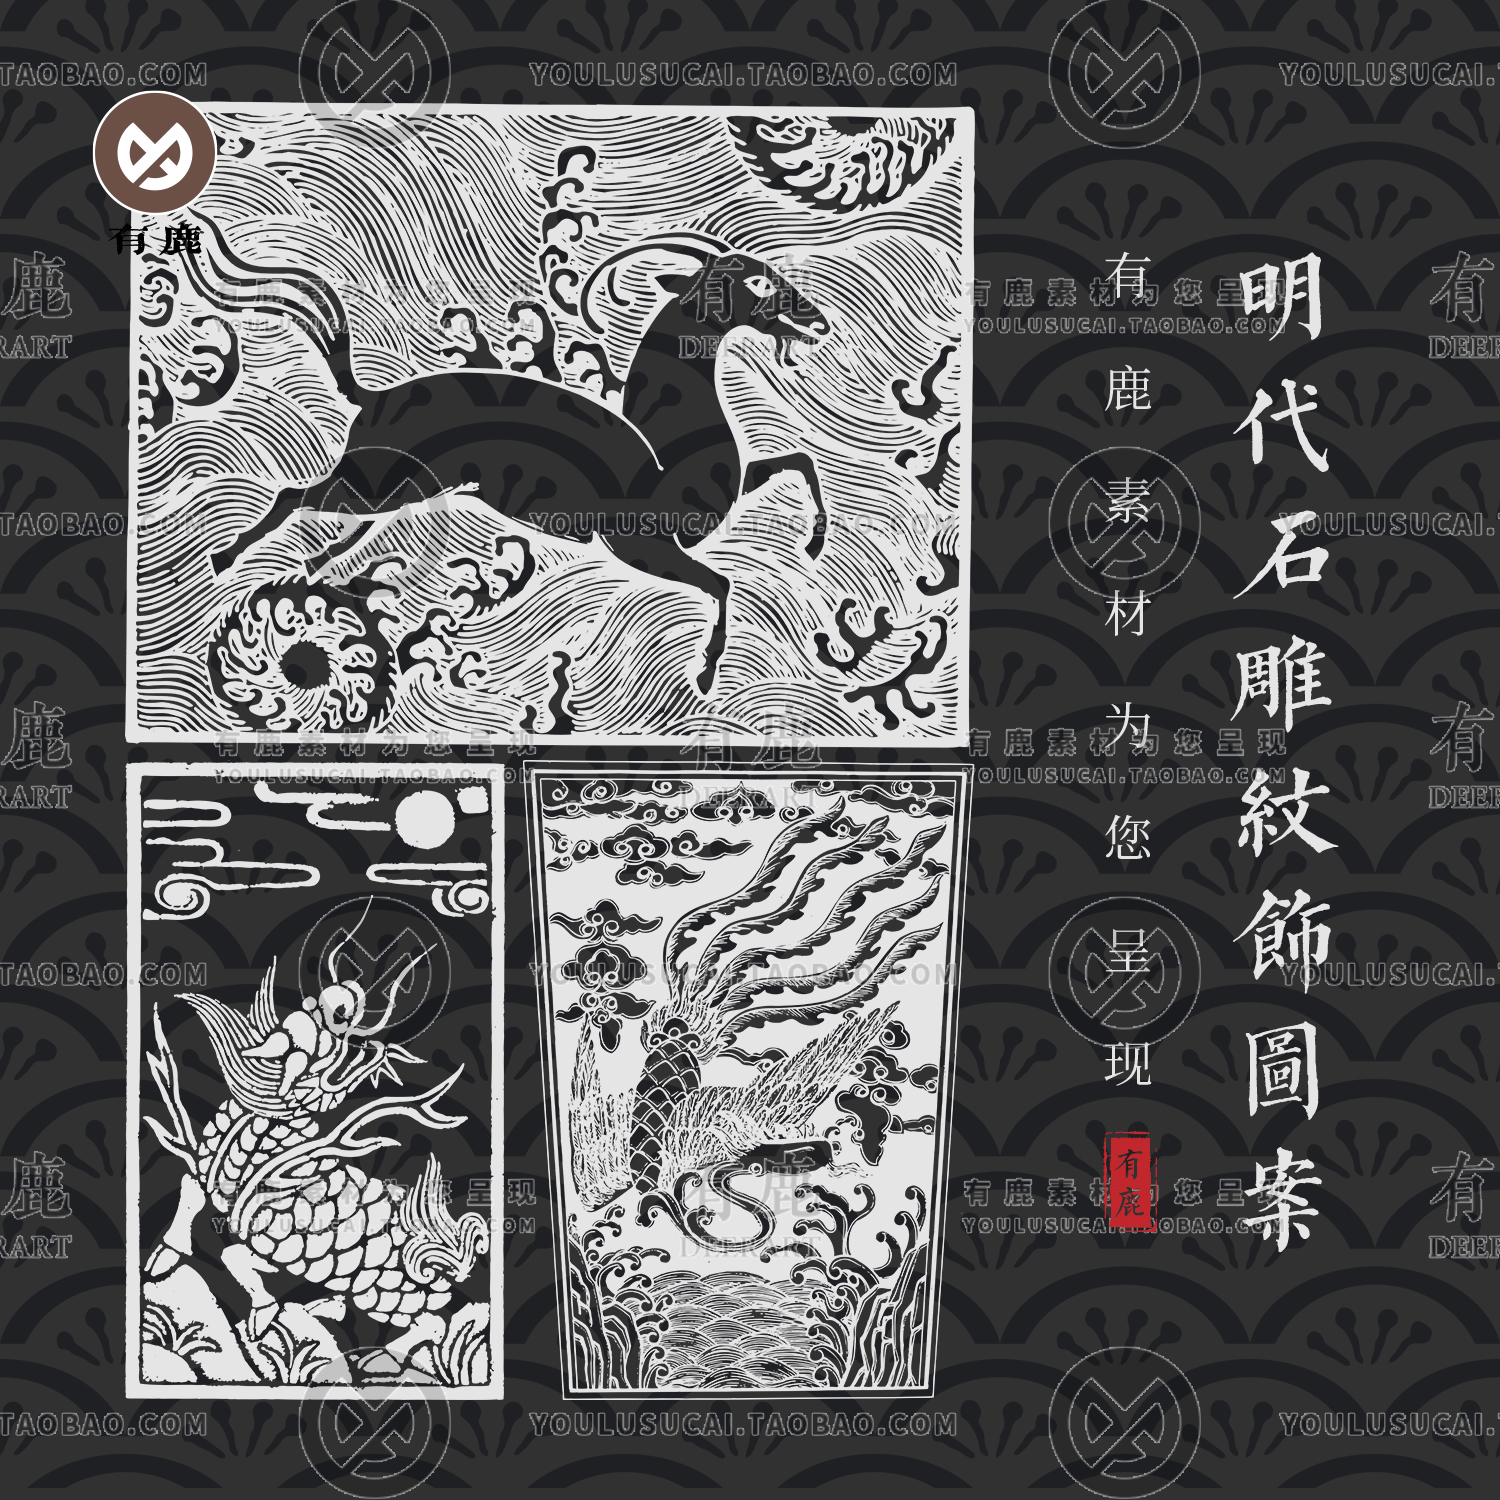 中国明代石雕纹饰图案传统雕刻拓片古代拓印纹样花纹矢量素材图片